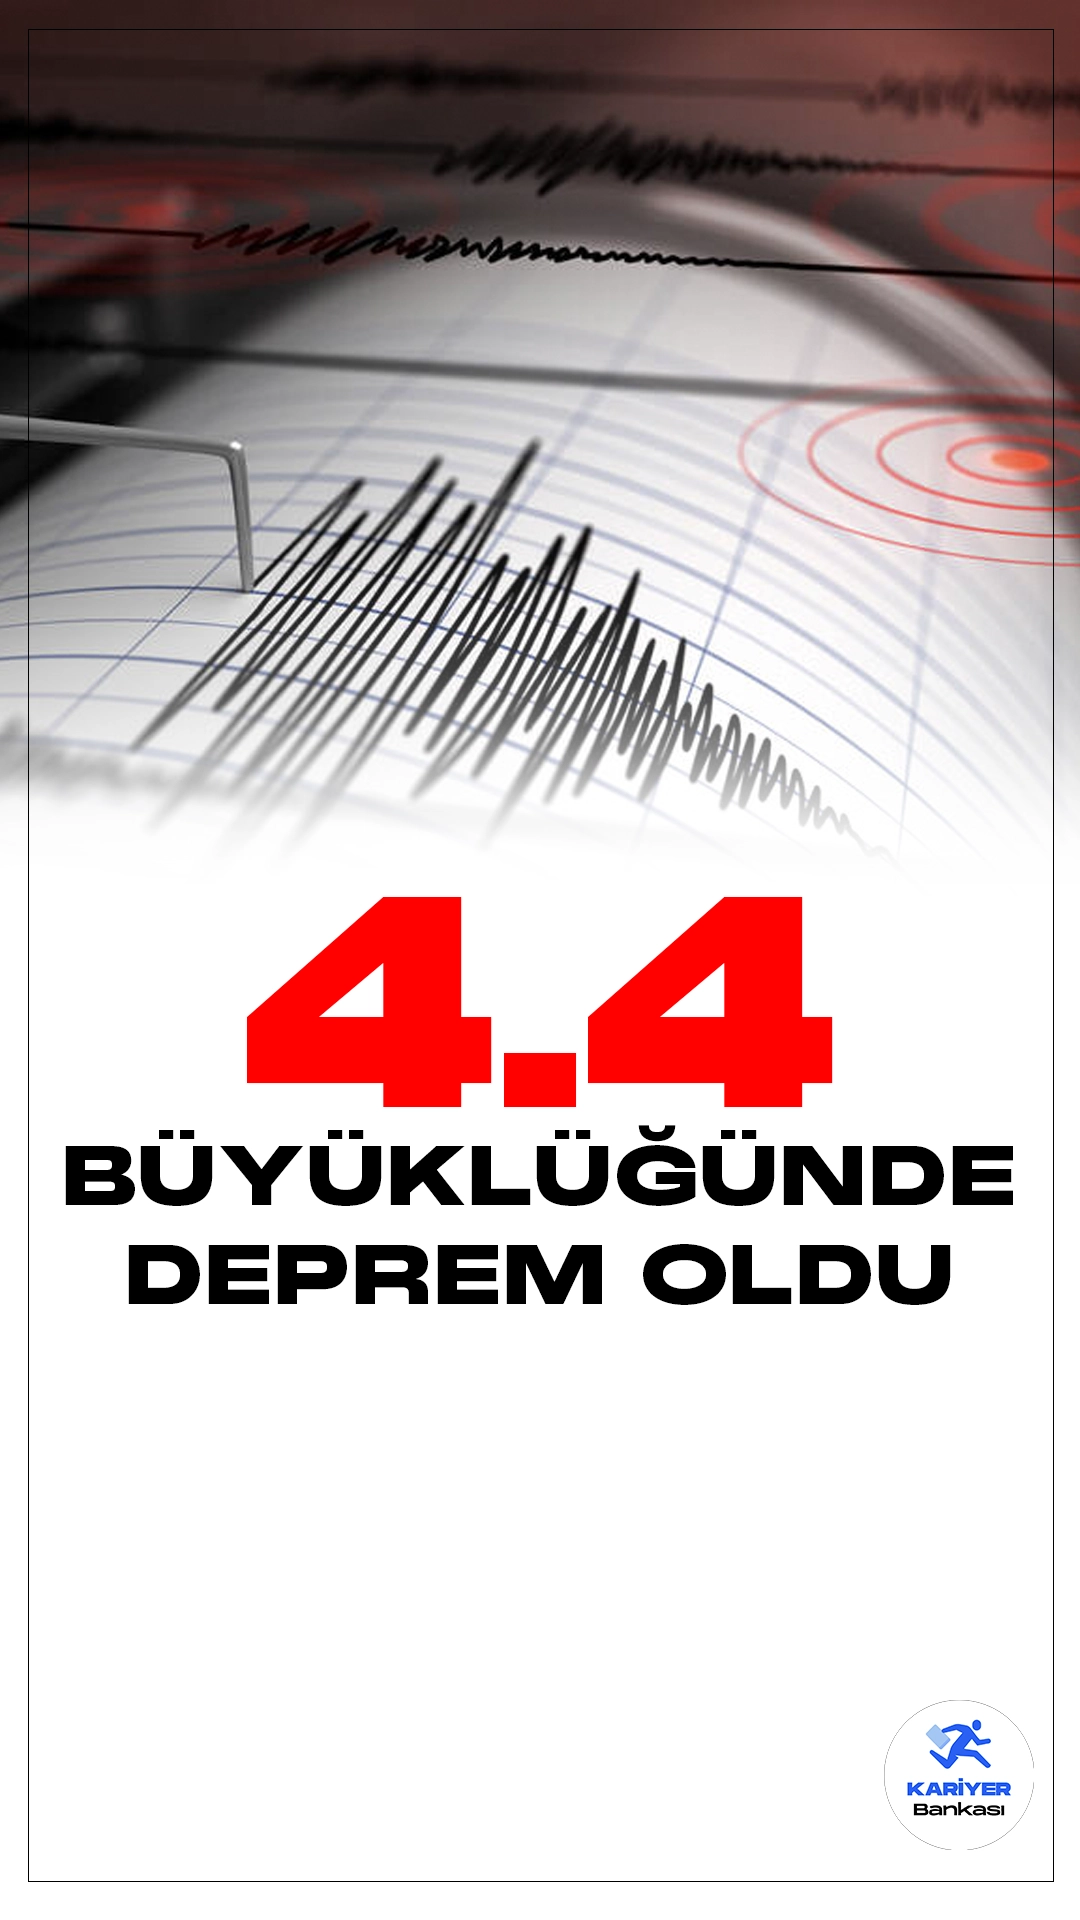 Malatya'da 4.4 Büyüklüğünde Deprem Oldu. İçişleri Bakanlığı Afet ve acil Durum Yönetimi Başkanlığı Deprem Dairesi tarafından yayımlanan son dakika duyurusunda, Malatya'nın Pötürge ilçesinde 4.4 büyüklüğünde deprem meydana geldiği aktarıldı.